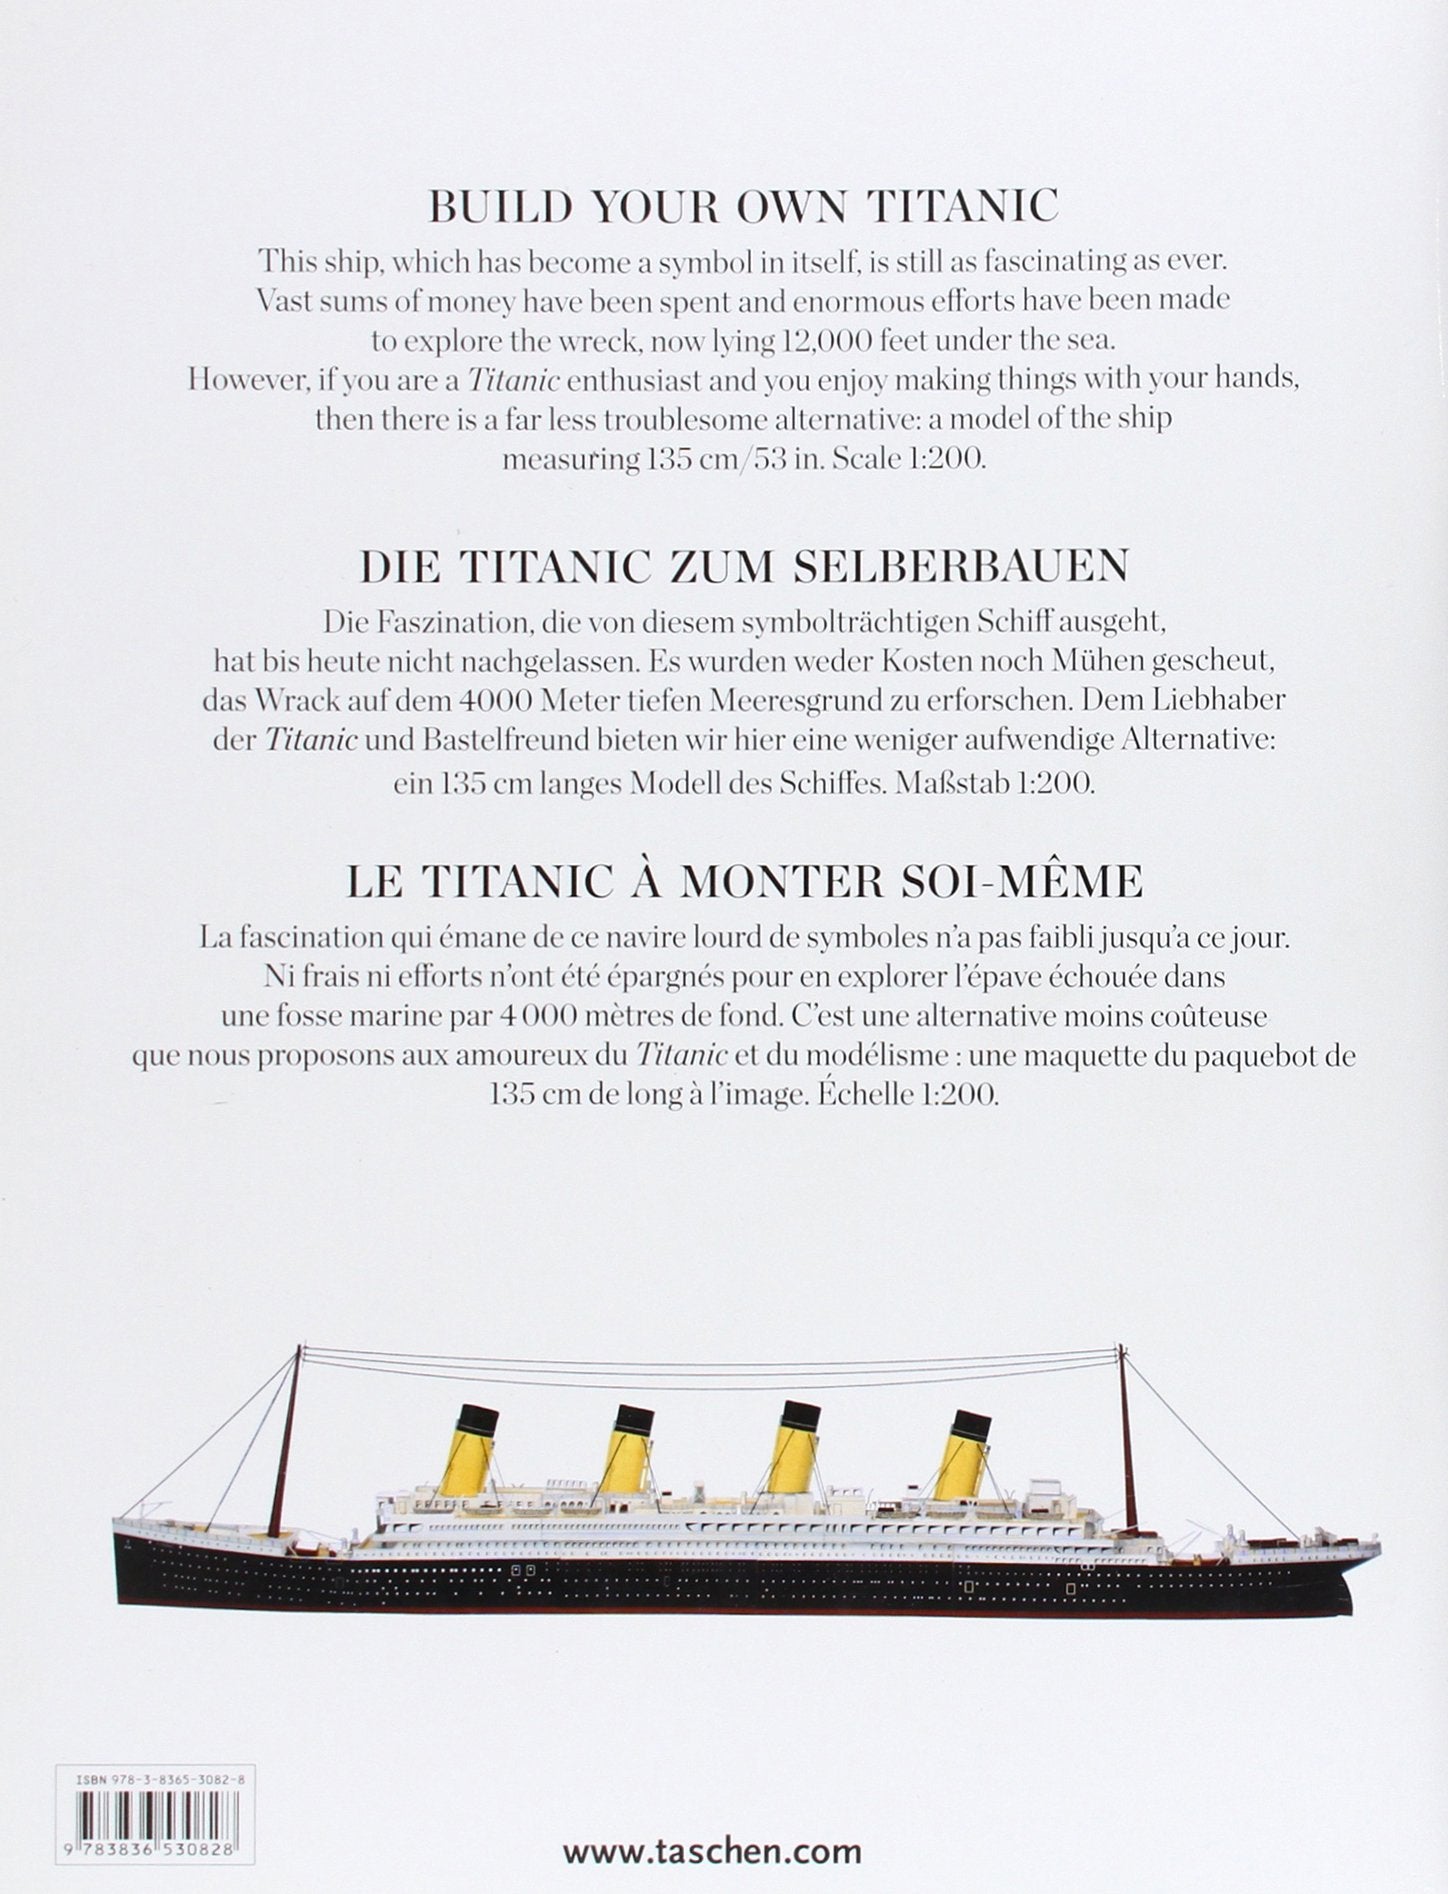 Titanic (Taschen)